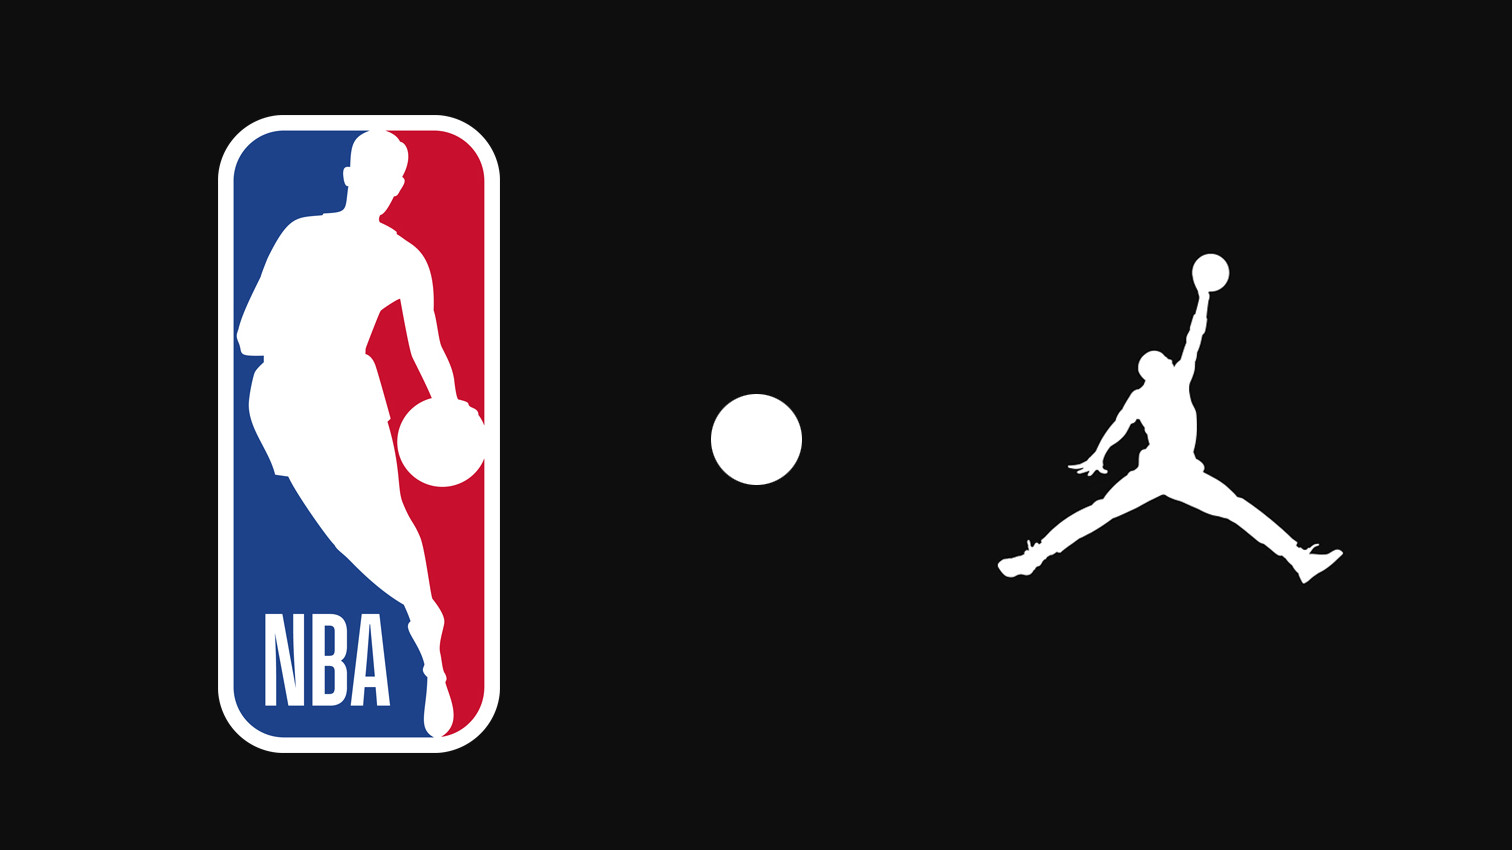 NBA Clothes – The Ballgame